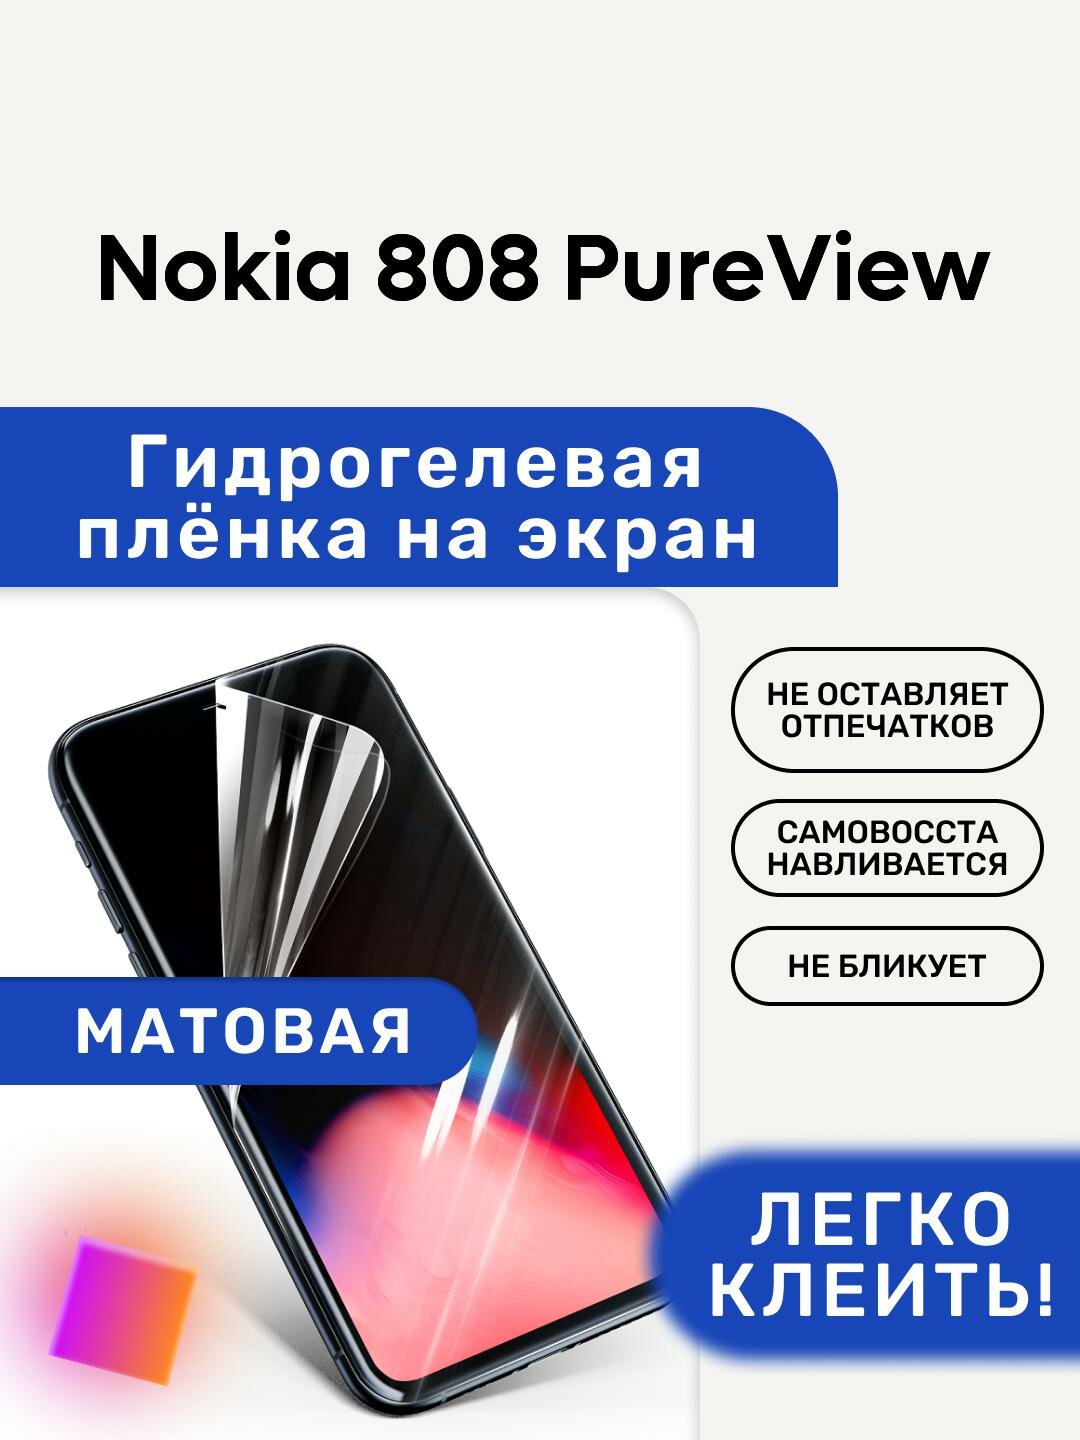 Матовая Гидрогелевая плёнка, полиуретановая, защита экрана Nokia 808 PureView